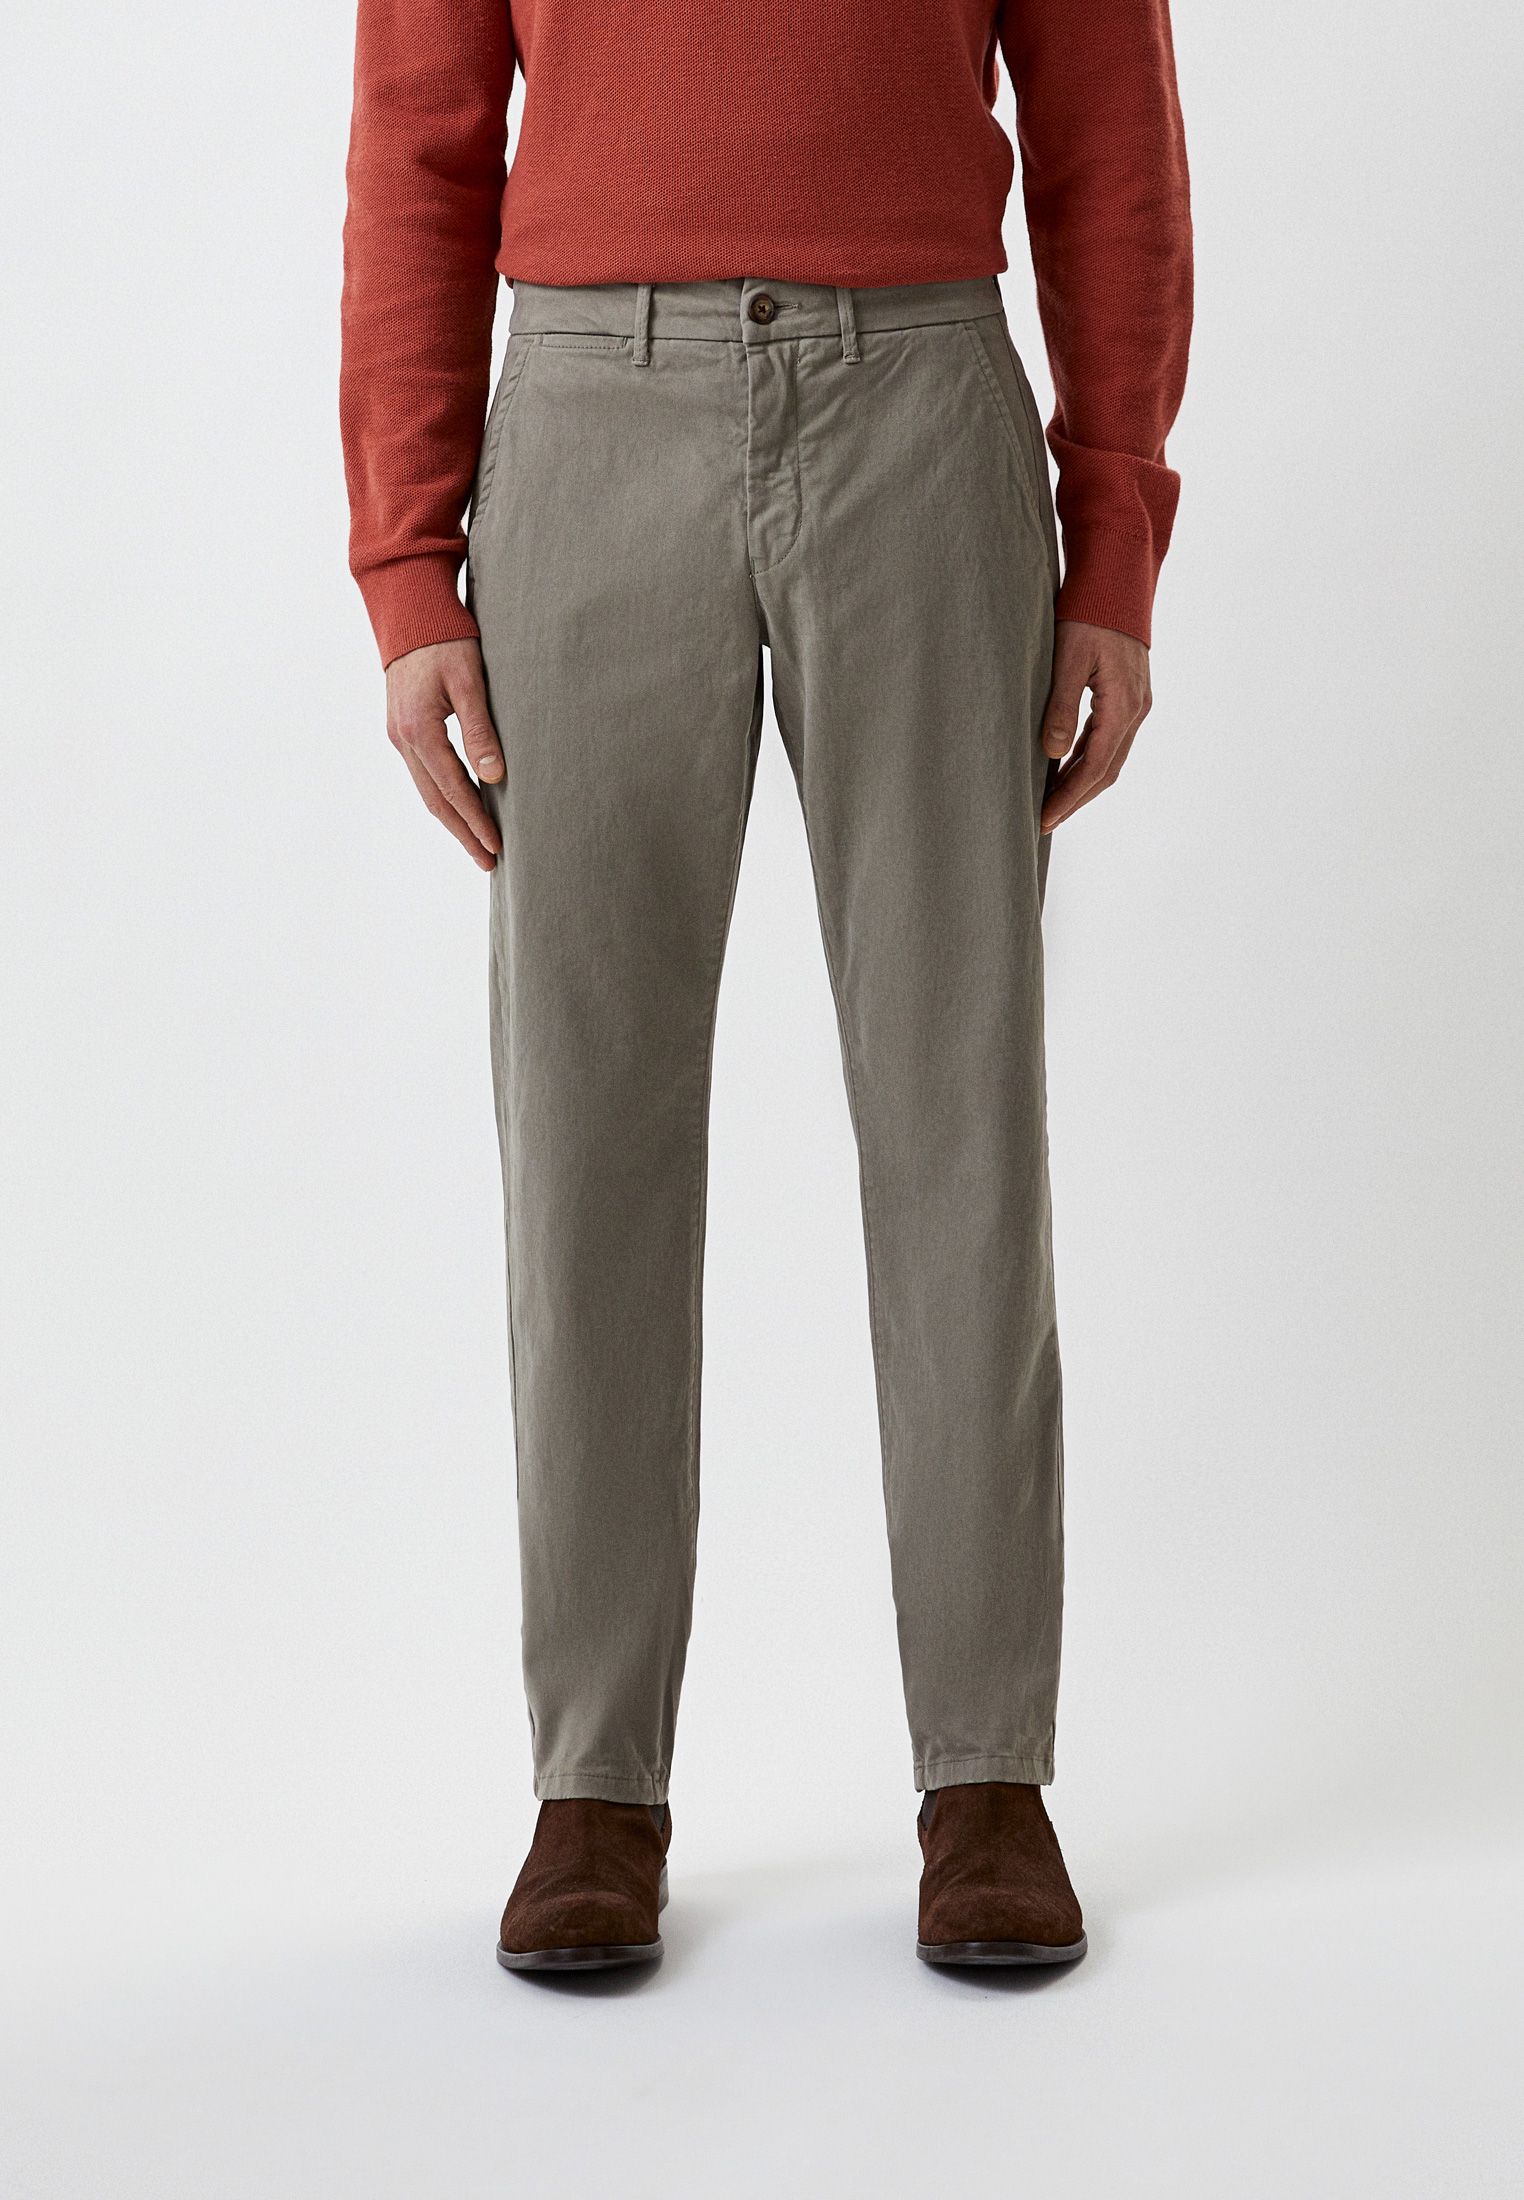 Мужские повседневные брюки Baldinini (Балдинини) M10: изображение 1